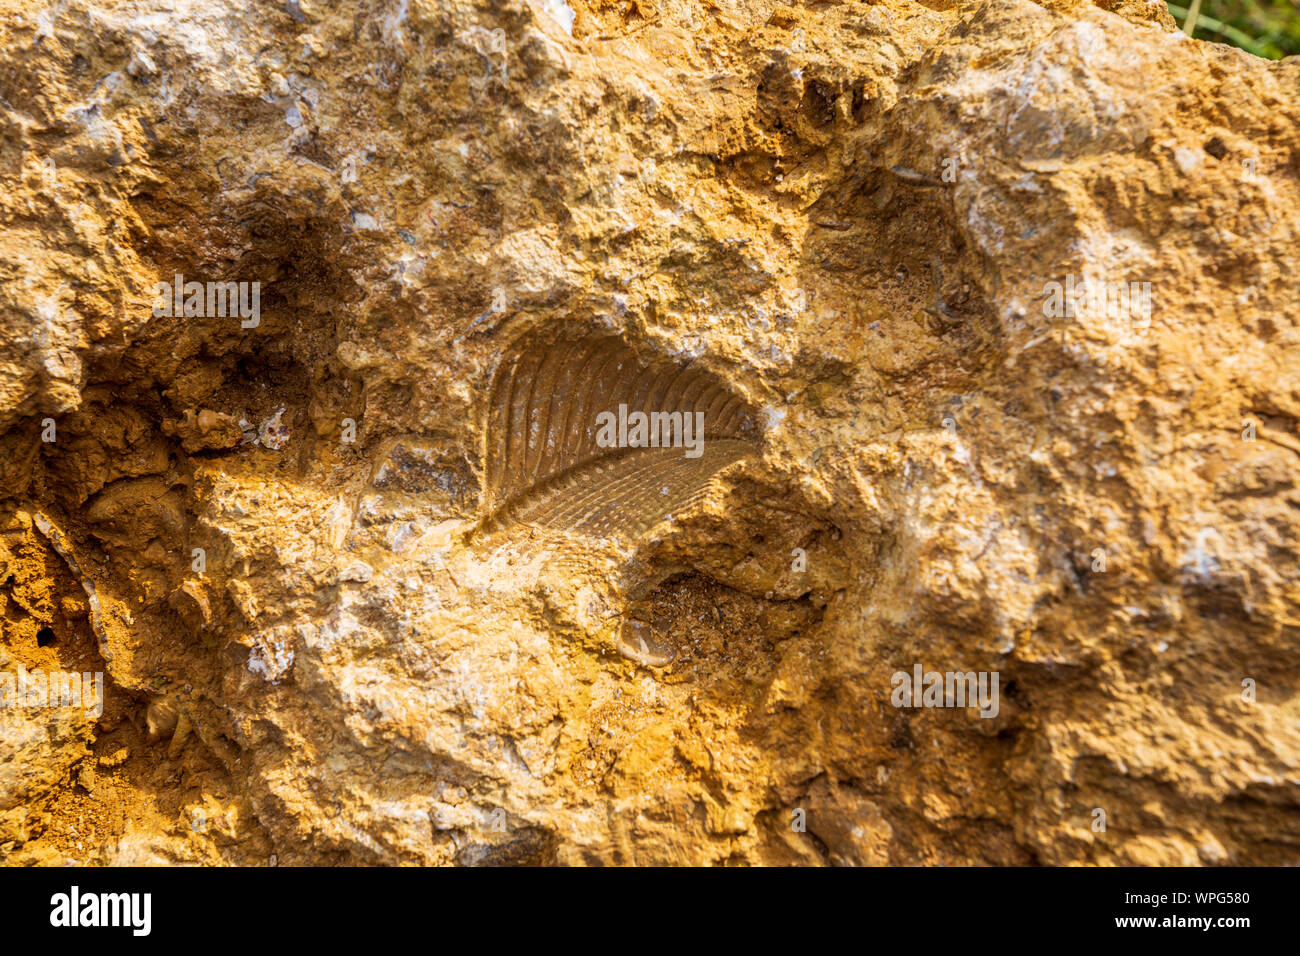 Un fósil bivalvo de Trigonia costata en piedra caliza en Cleeve común cerca de Cheltenham, Inglaterra Foto de stock